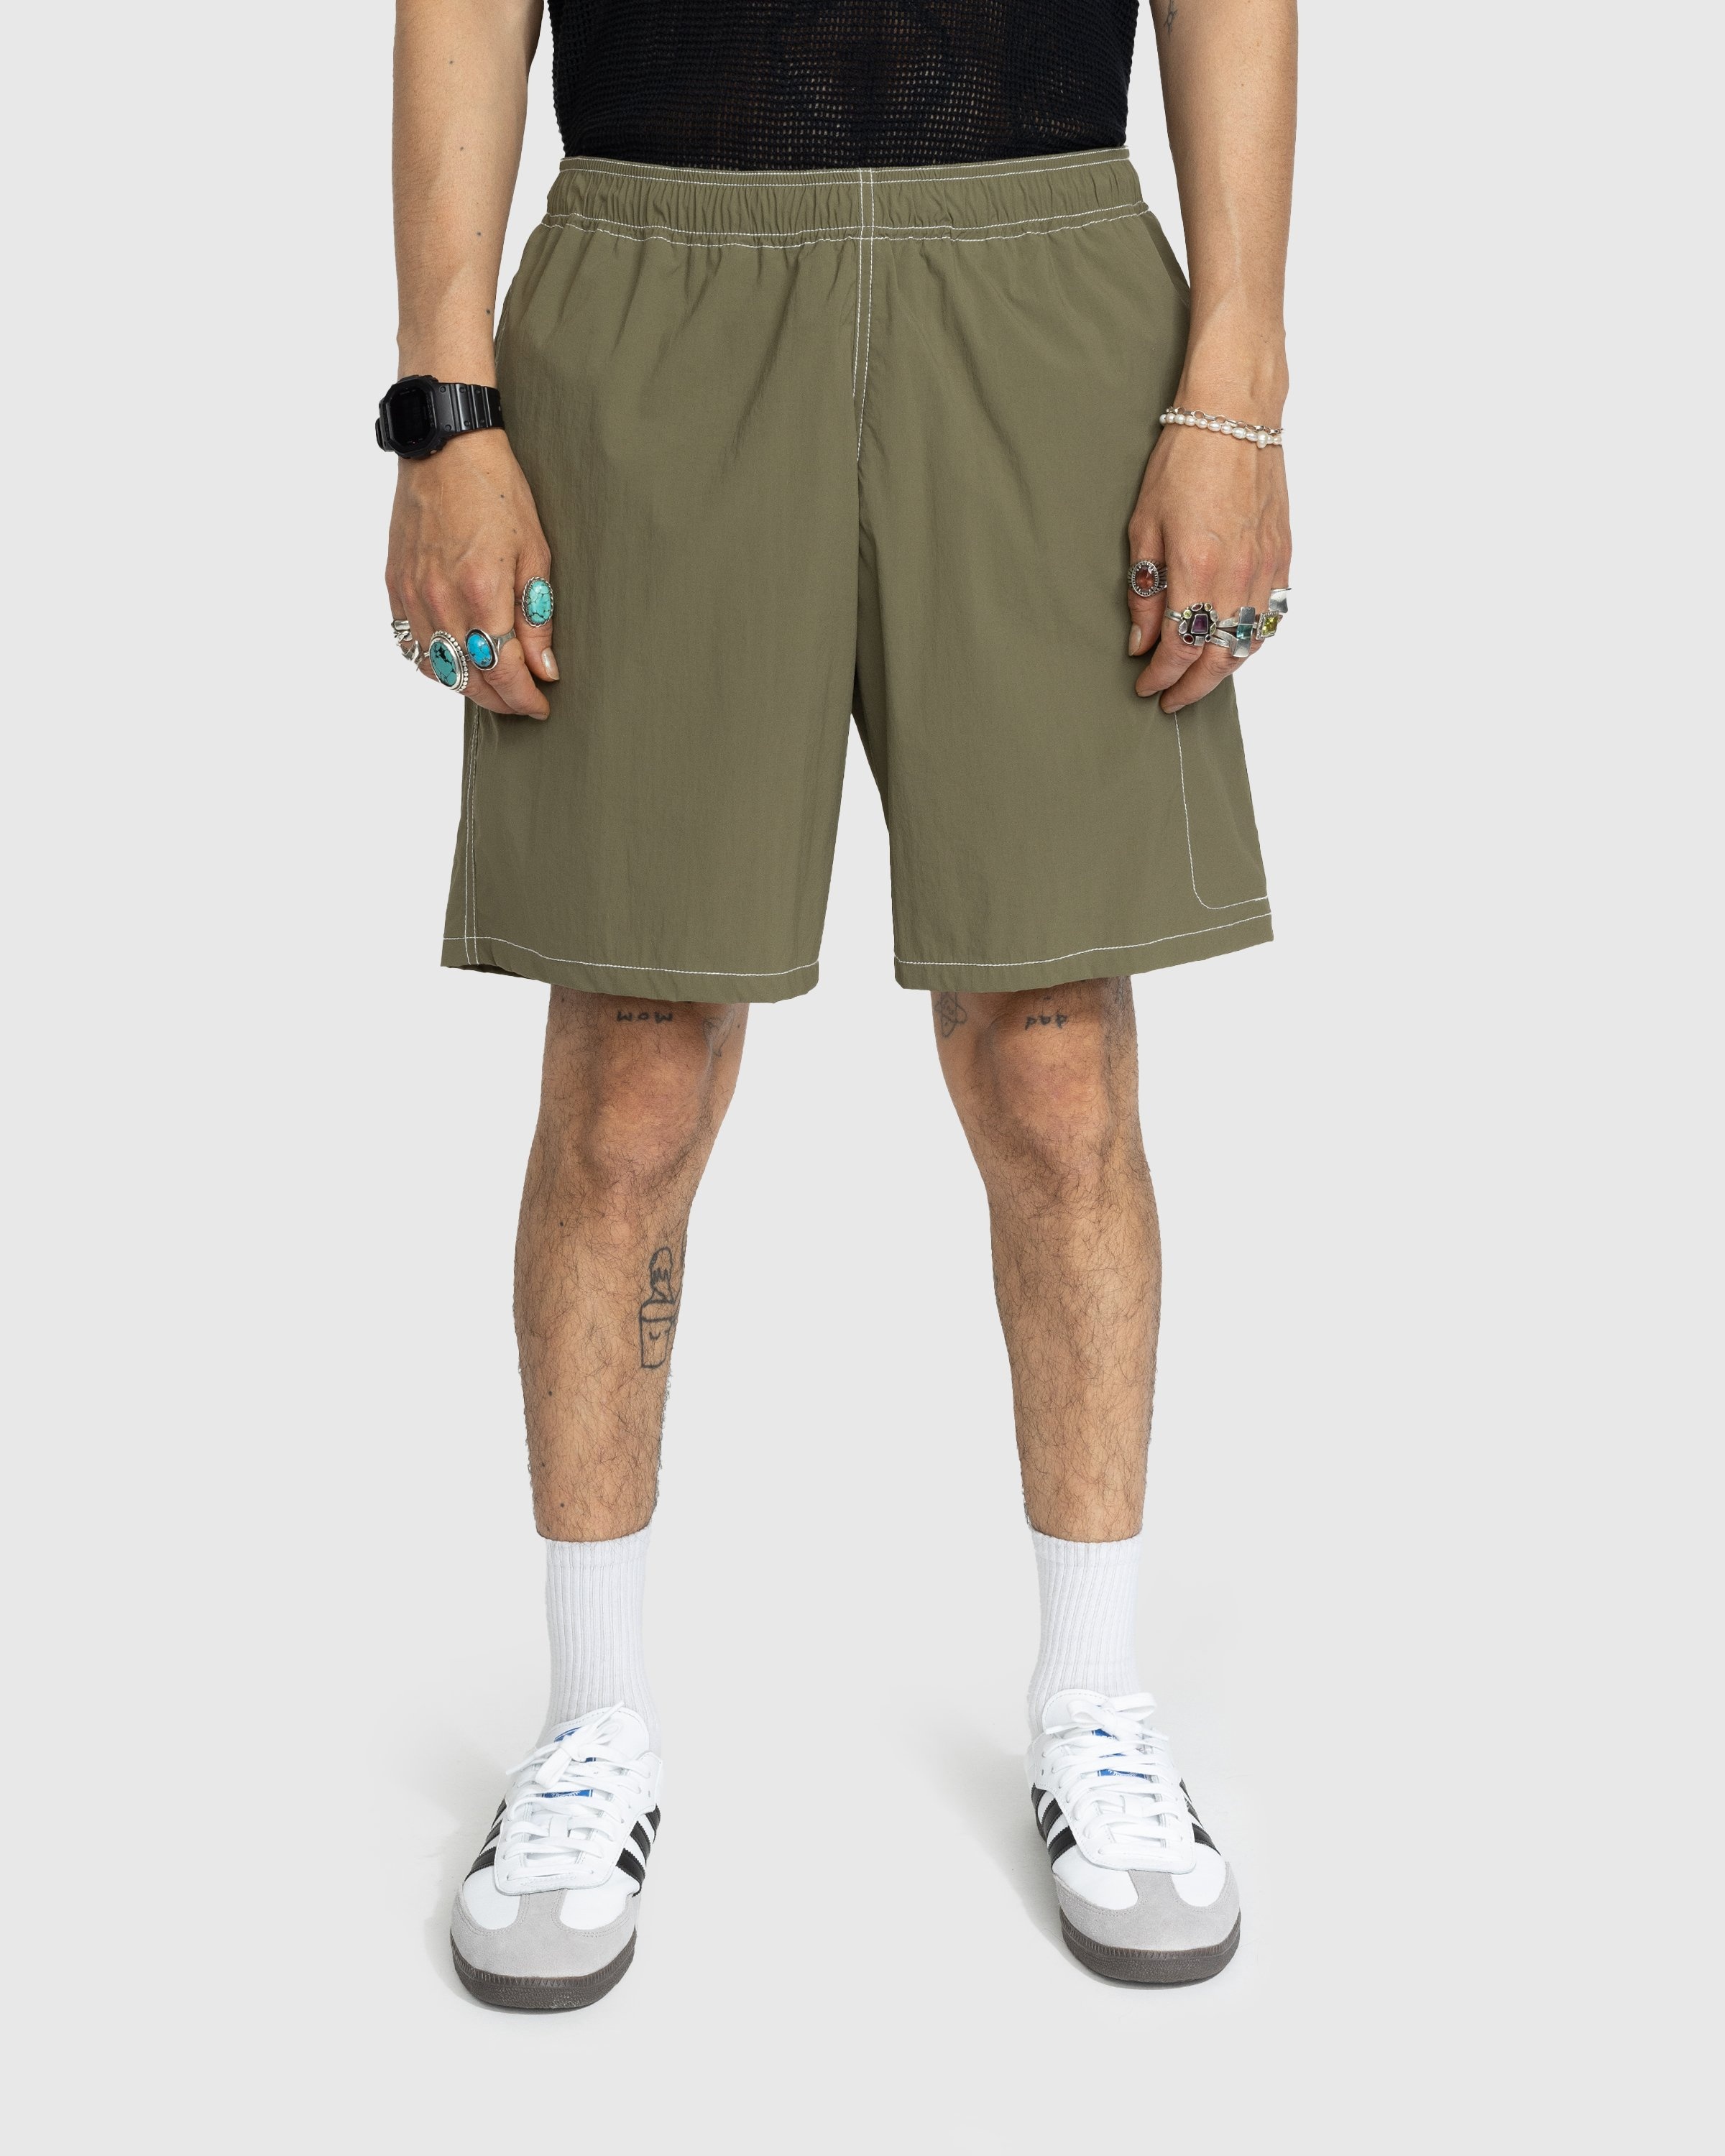 Highsnobiety – Side Cargo Shorts Khaki - Active Shorts - Green - Image 2